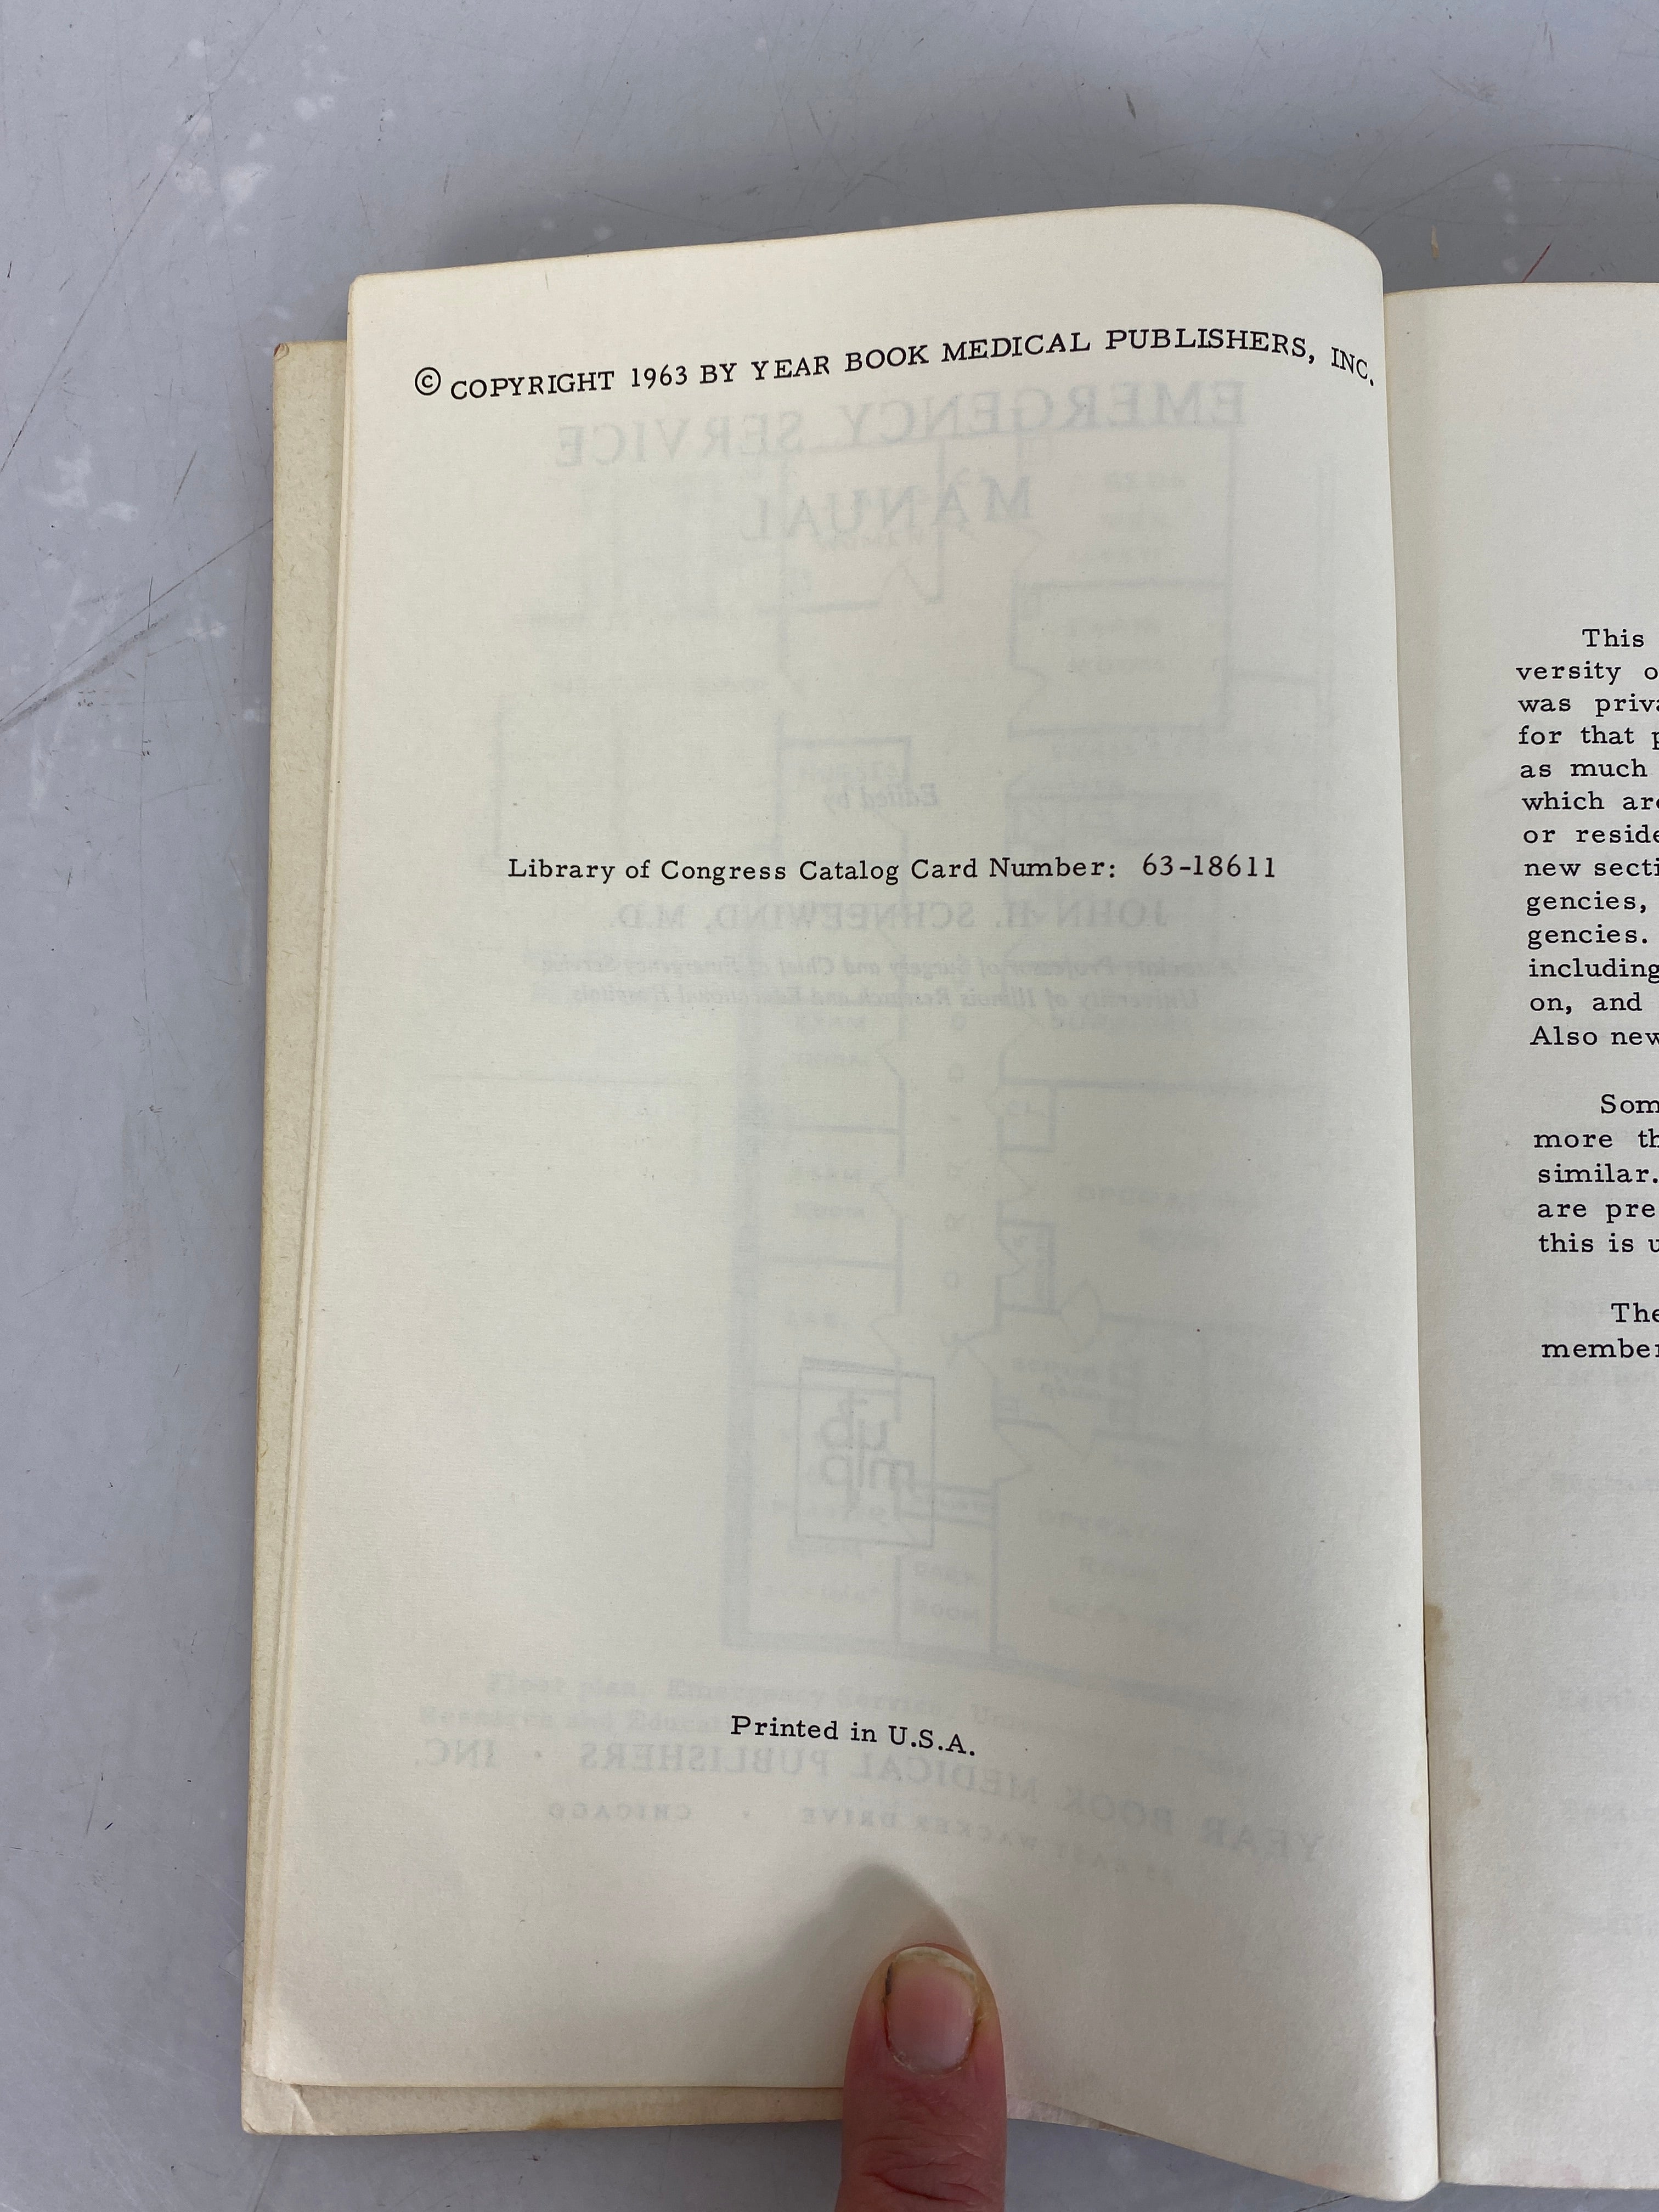 Emergency Service Manual by John Schneewind 1963 SC